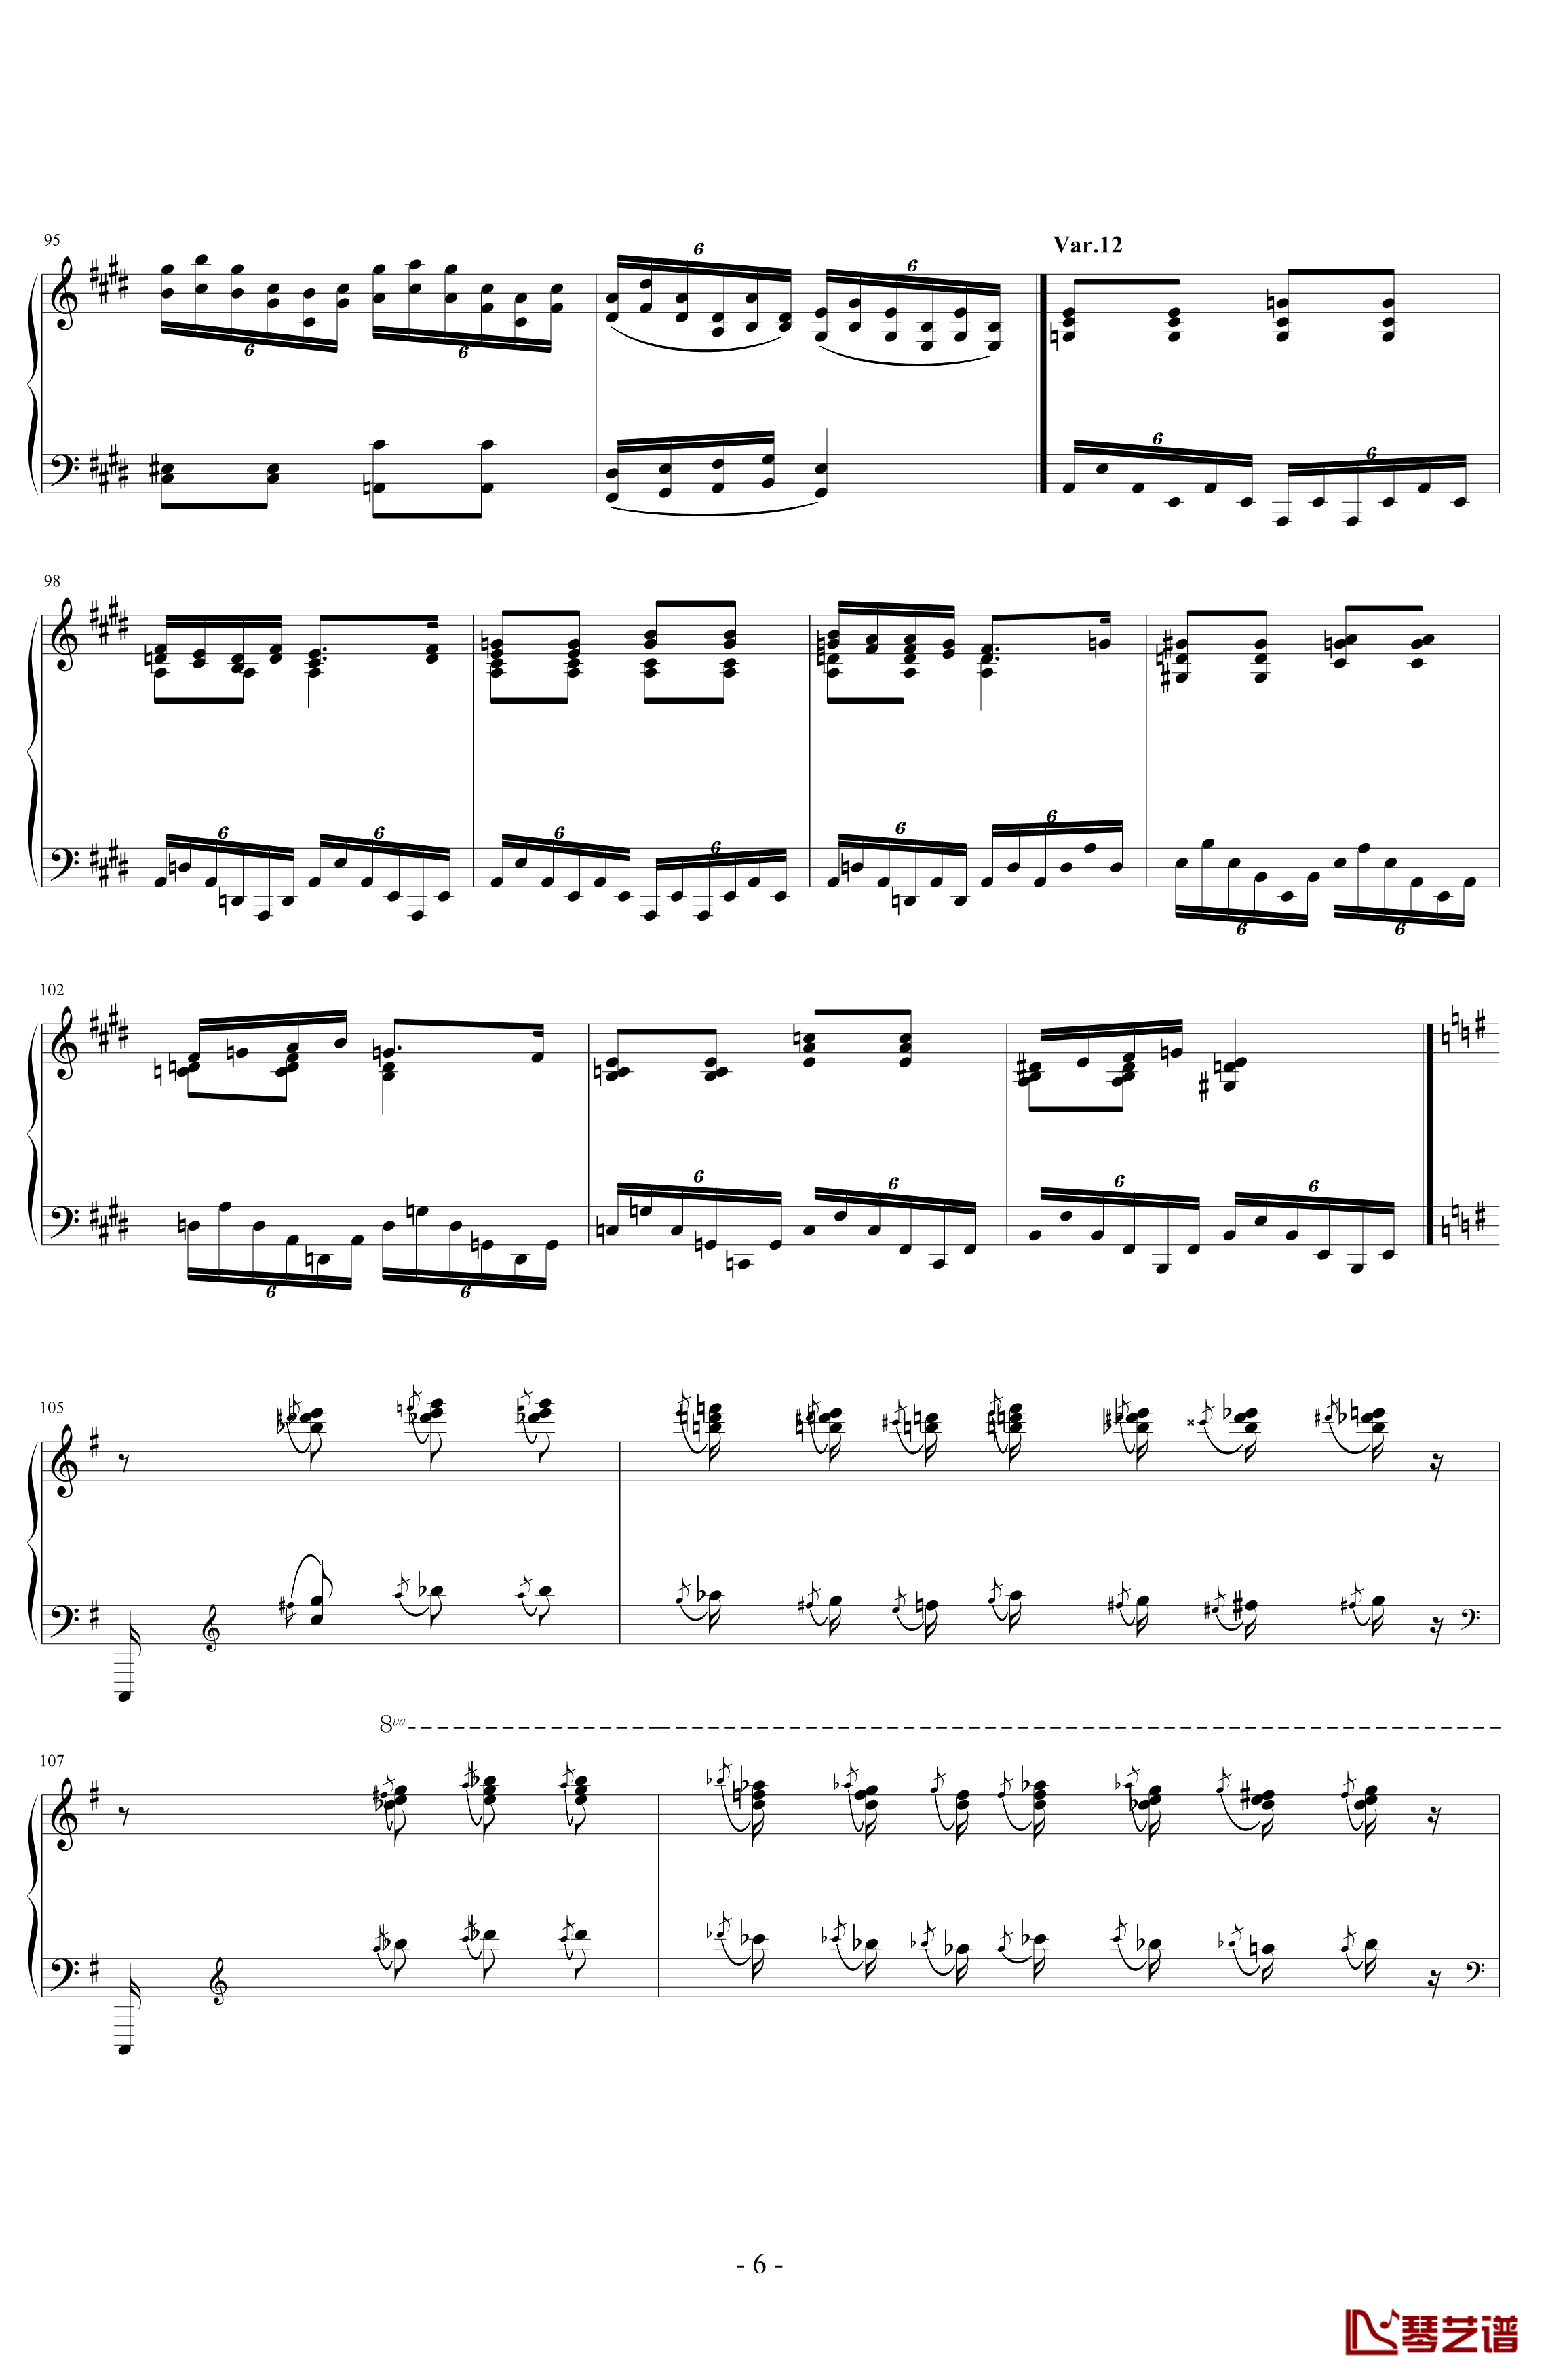 阿尔坎Op.39 No.12 变奏曲钢琴谱-Charles-Valentin Alkan6